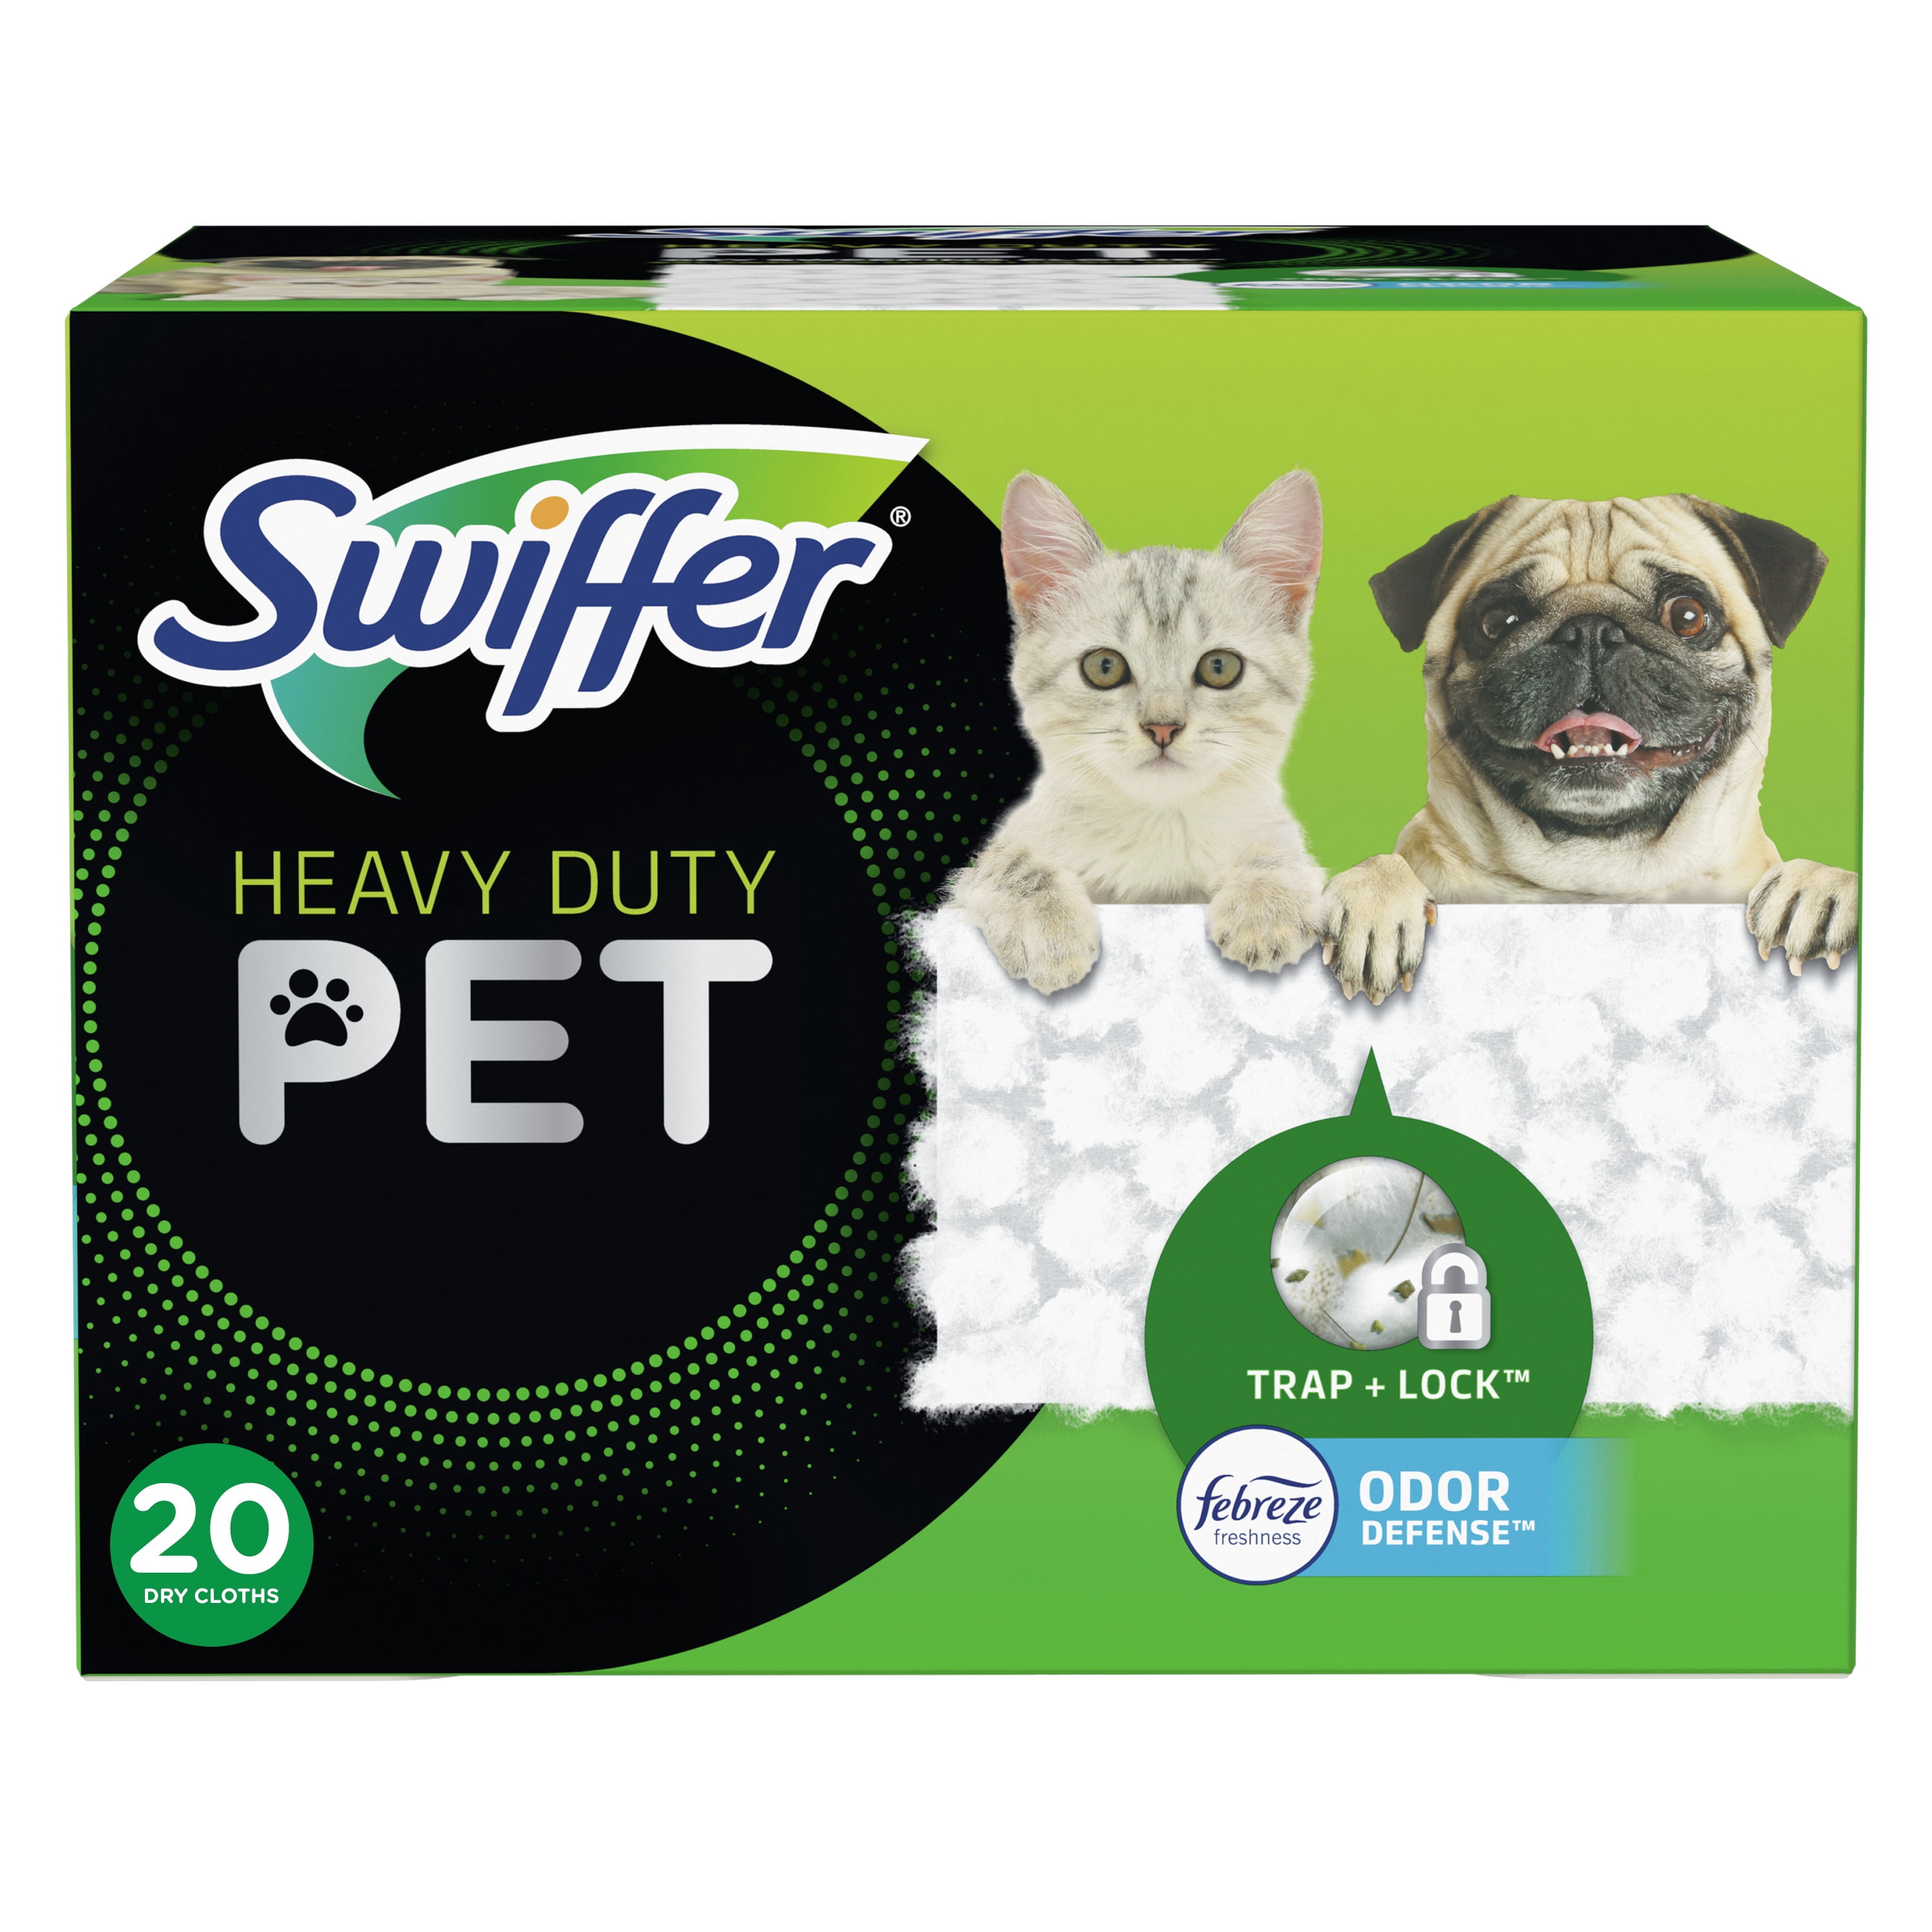 Swiffer Sweeper Heavy Duty Pet Dry Refills, Febreze Odor Defense, 20 Ct